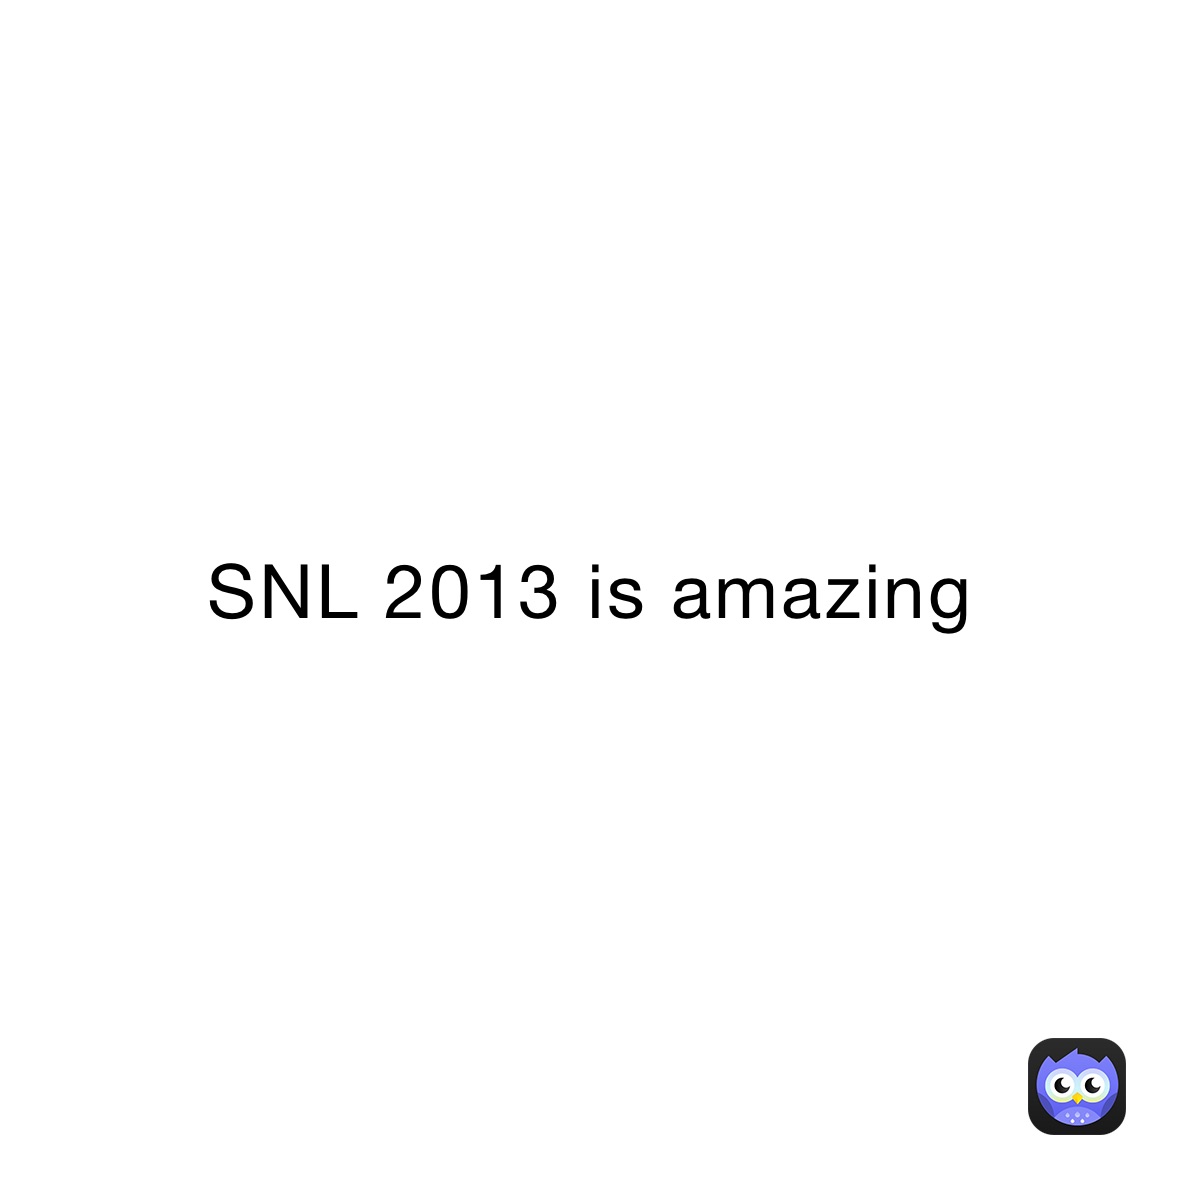 SNL 2013 is amazing